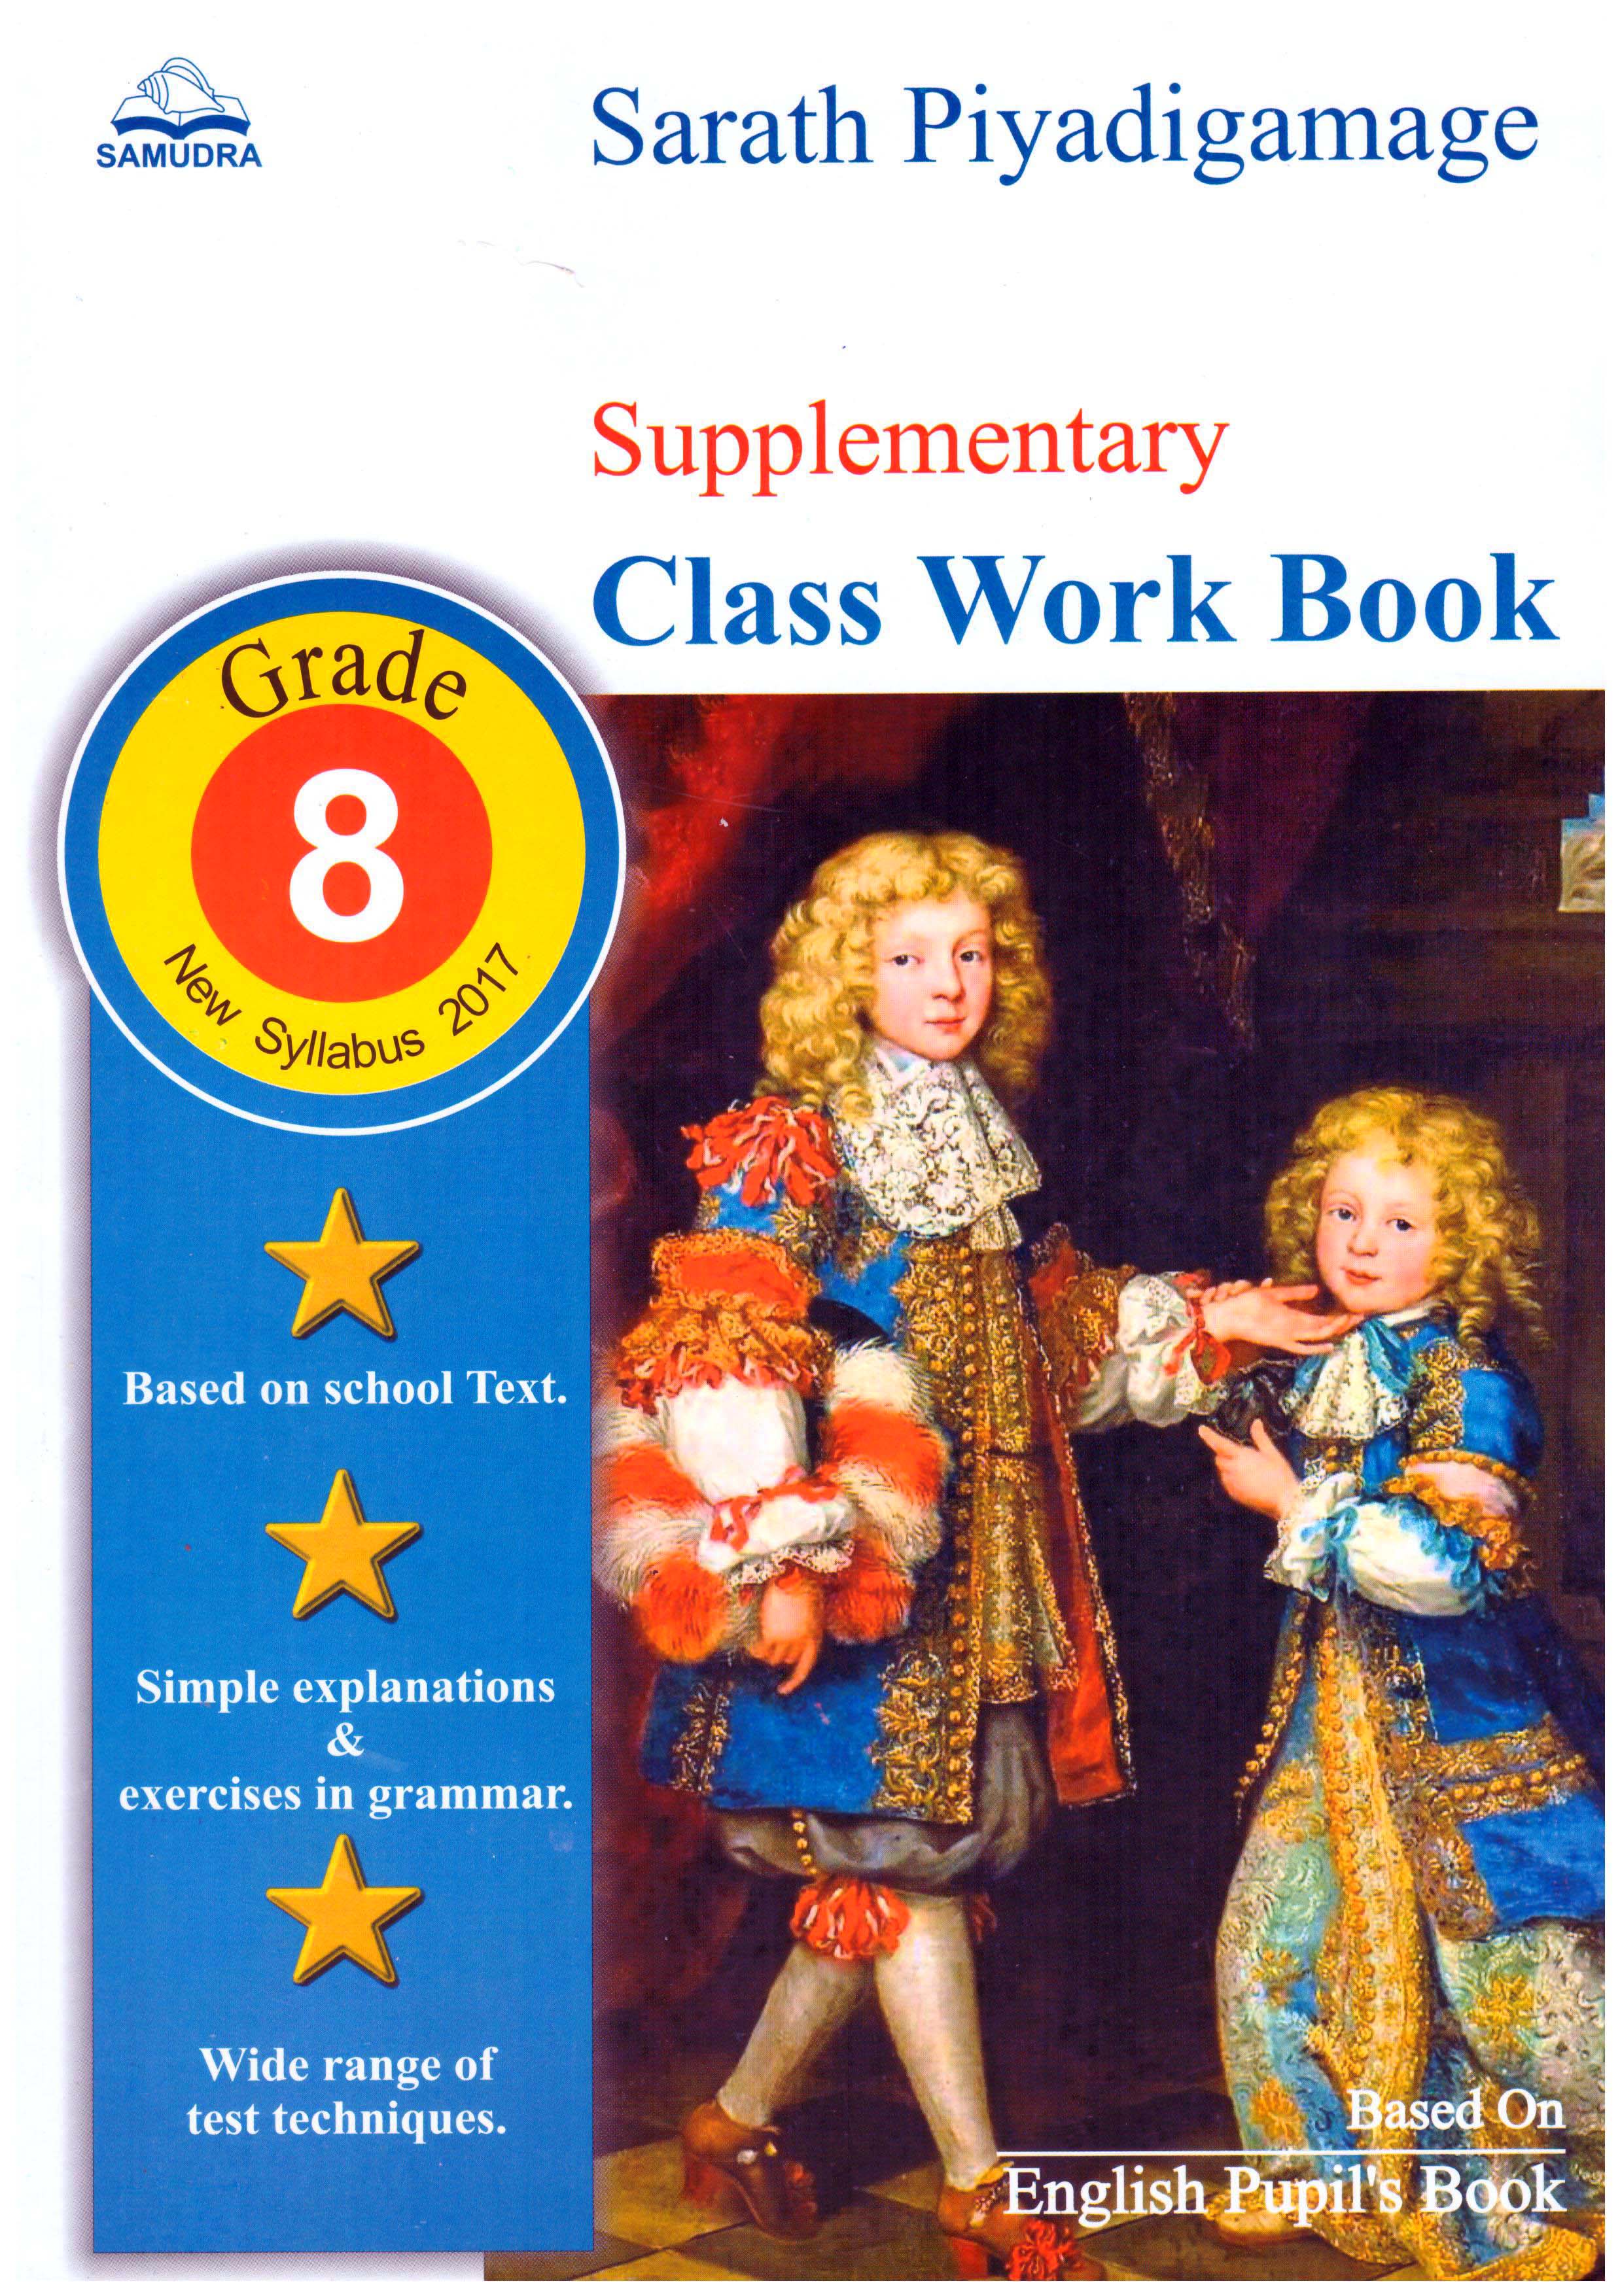 Supplementry Class Work Book Grade 8